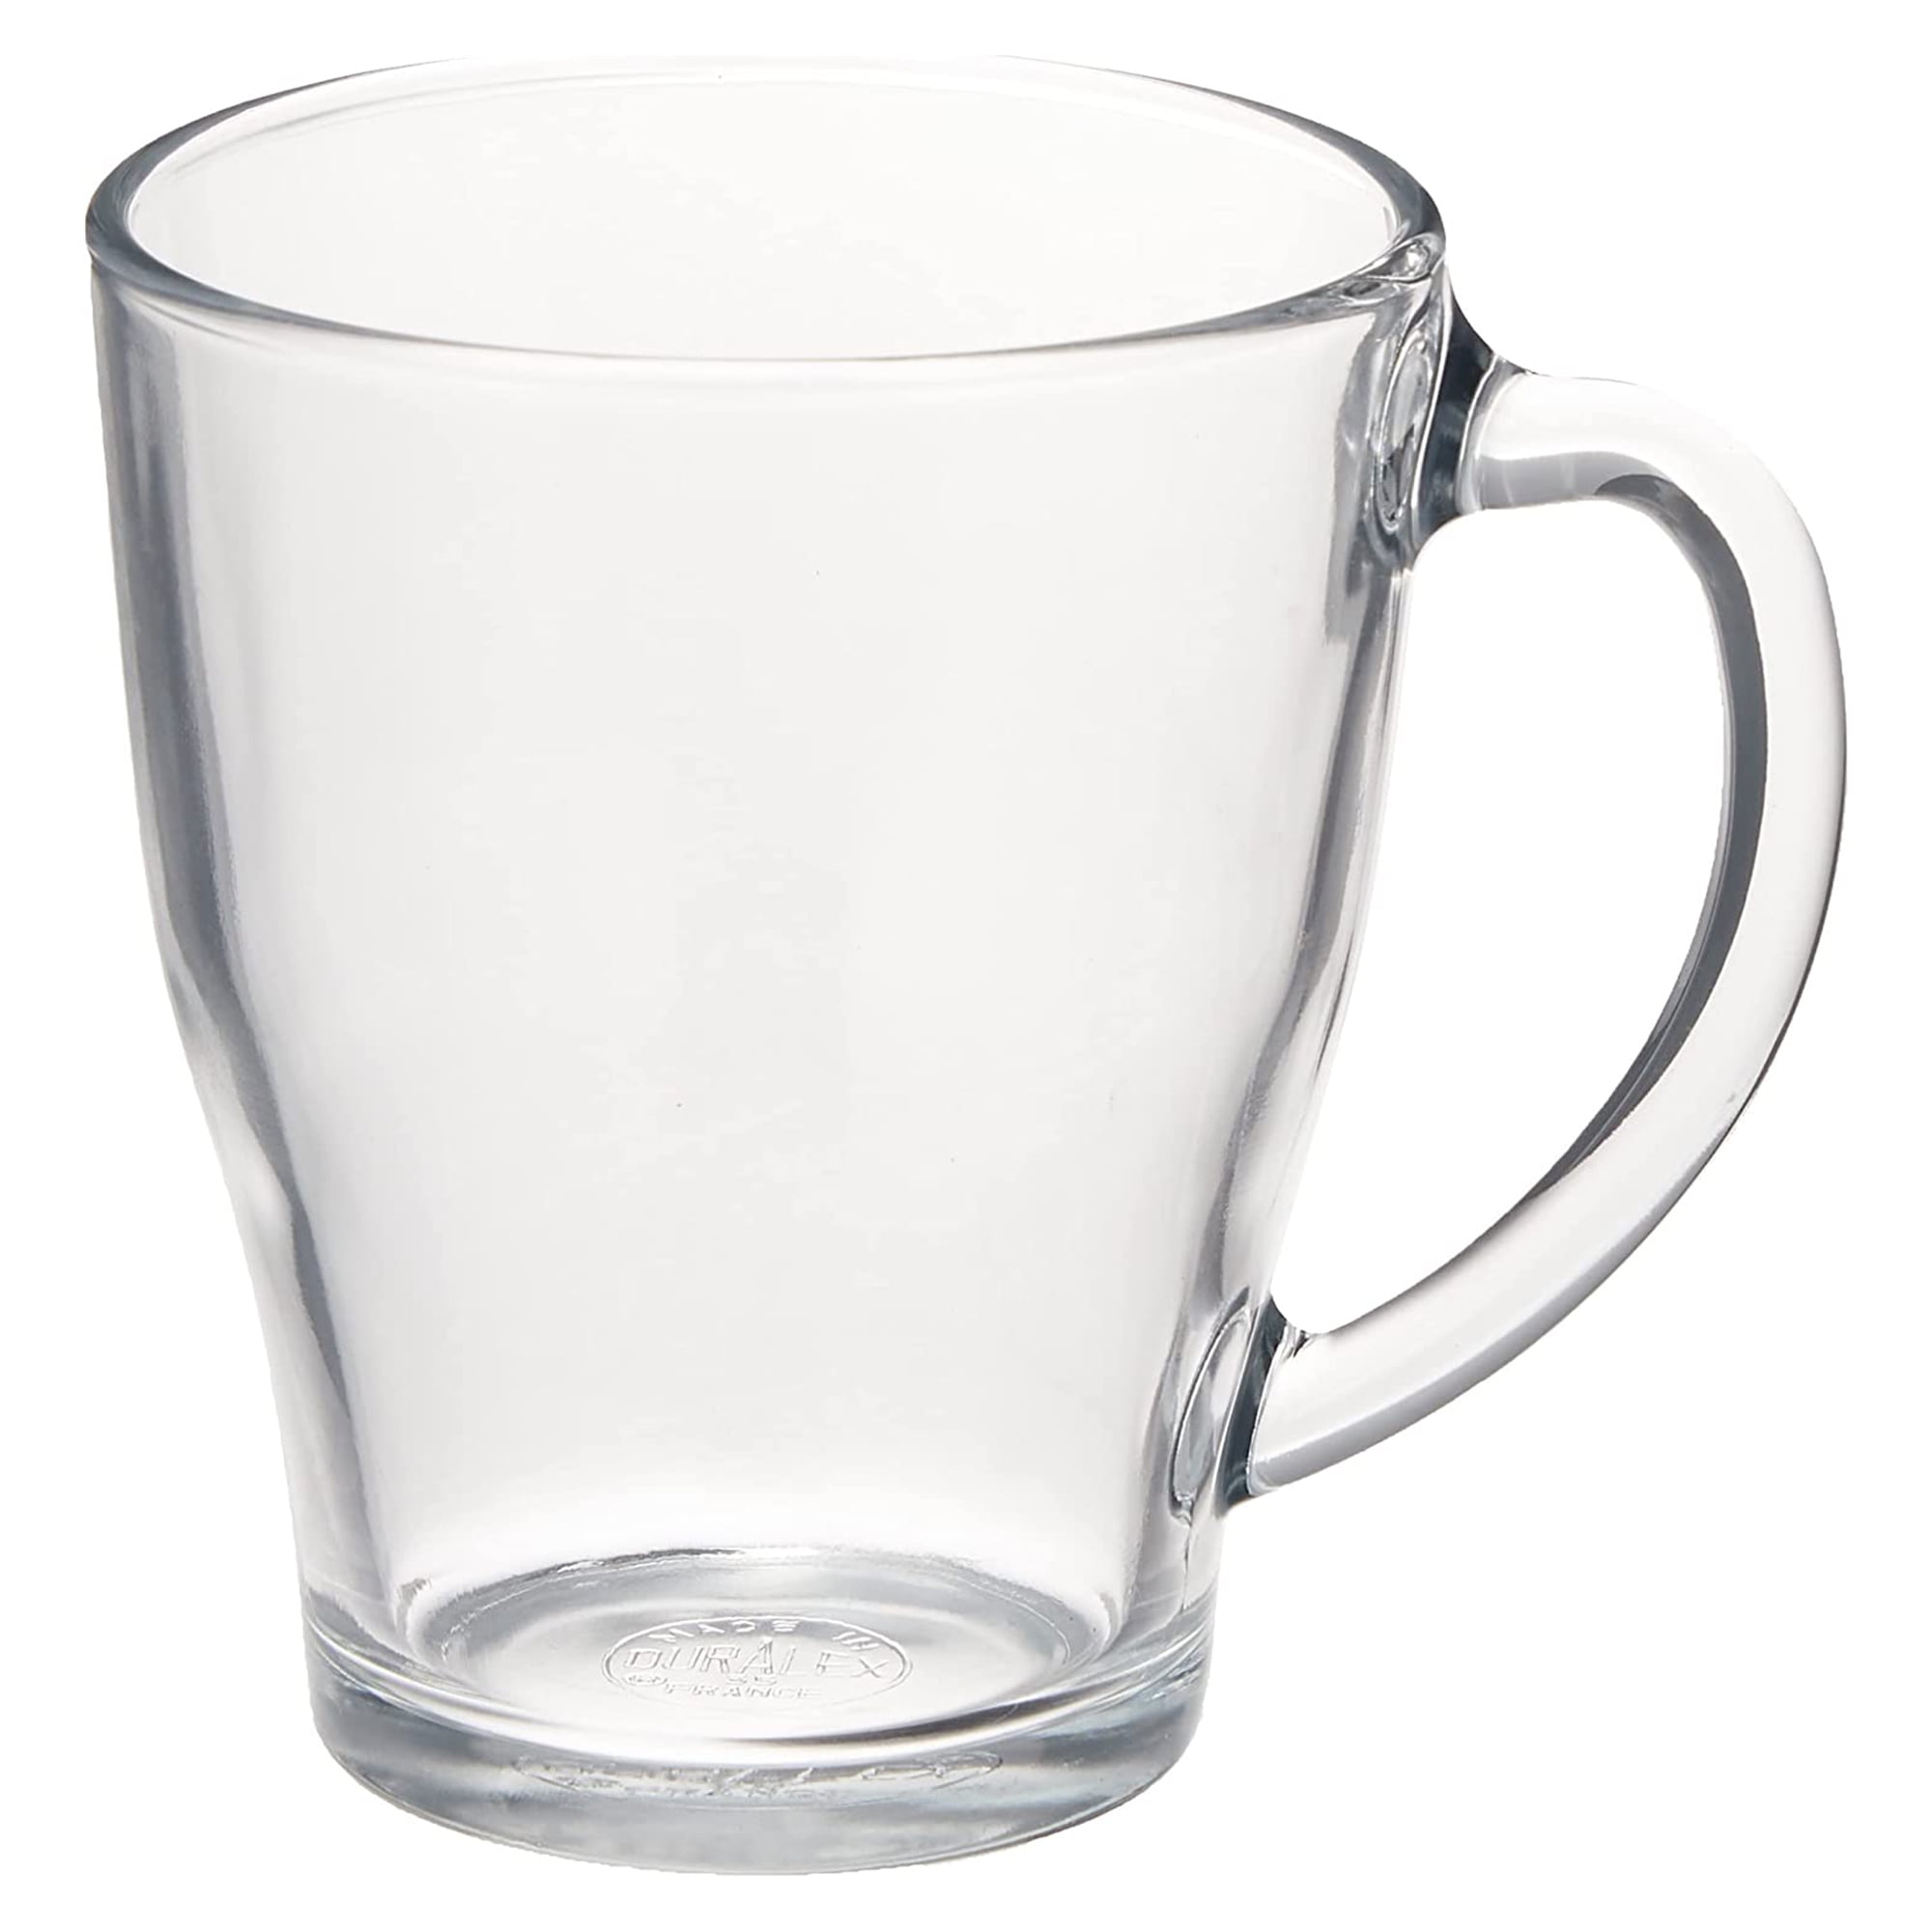 Eparé Clear Glass Coffee Mugs - 12 oz Clear Transparent Tea Cups & Coffee  Glasses - Clear Coffee Mug…See more Eparé Clear Glass Coffee Mugs - 12 oz